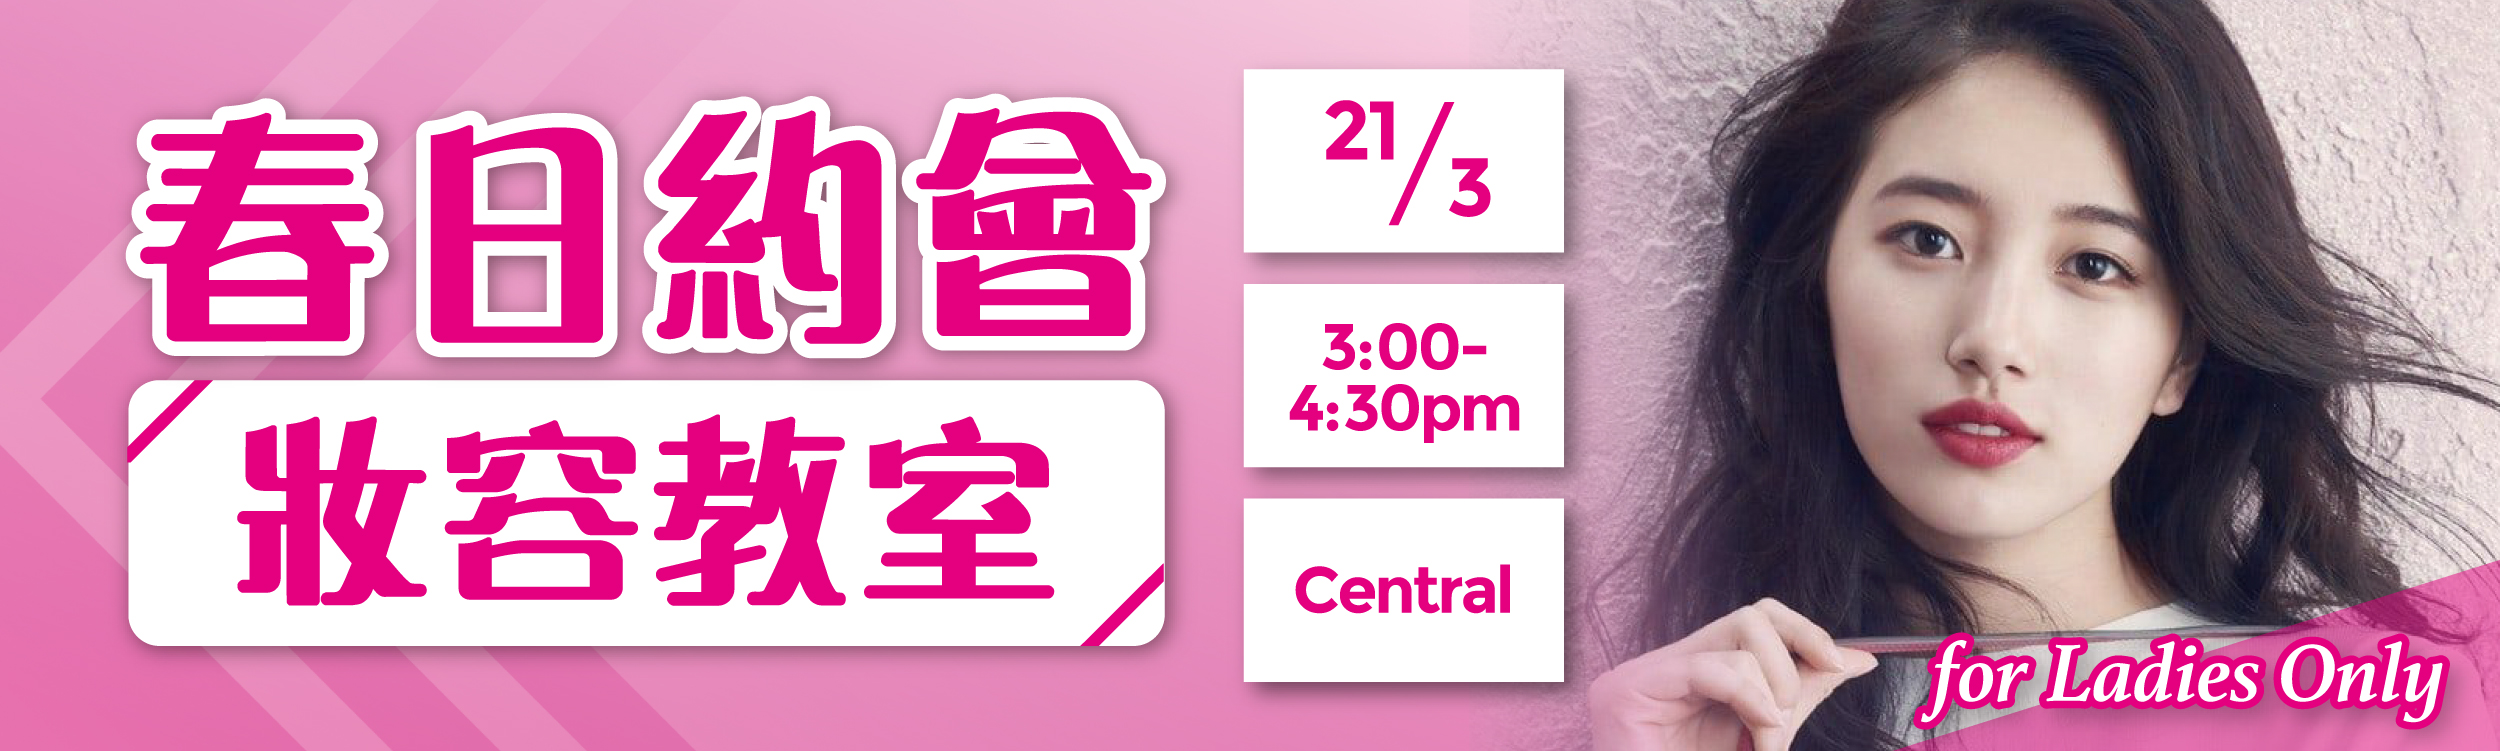 (完滿舉行)春日約會妝容教室 for Ladies Only - 2020年3月21日(星期六) 香港交友約會業協會 Hong Kong Speed Dating Federation - Speed Dating , 一對一約會, 單對單約會, 約會行業, 約會配對